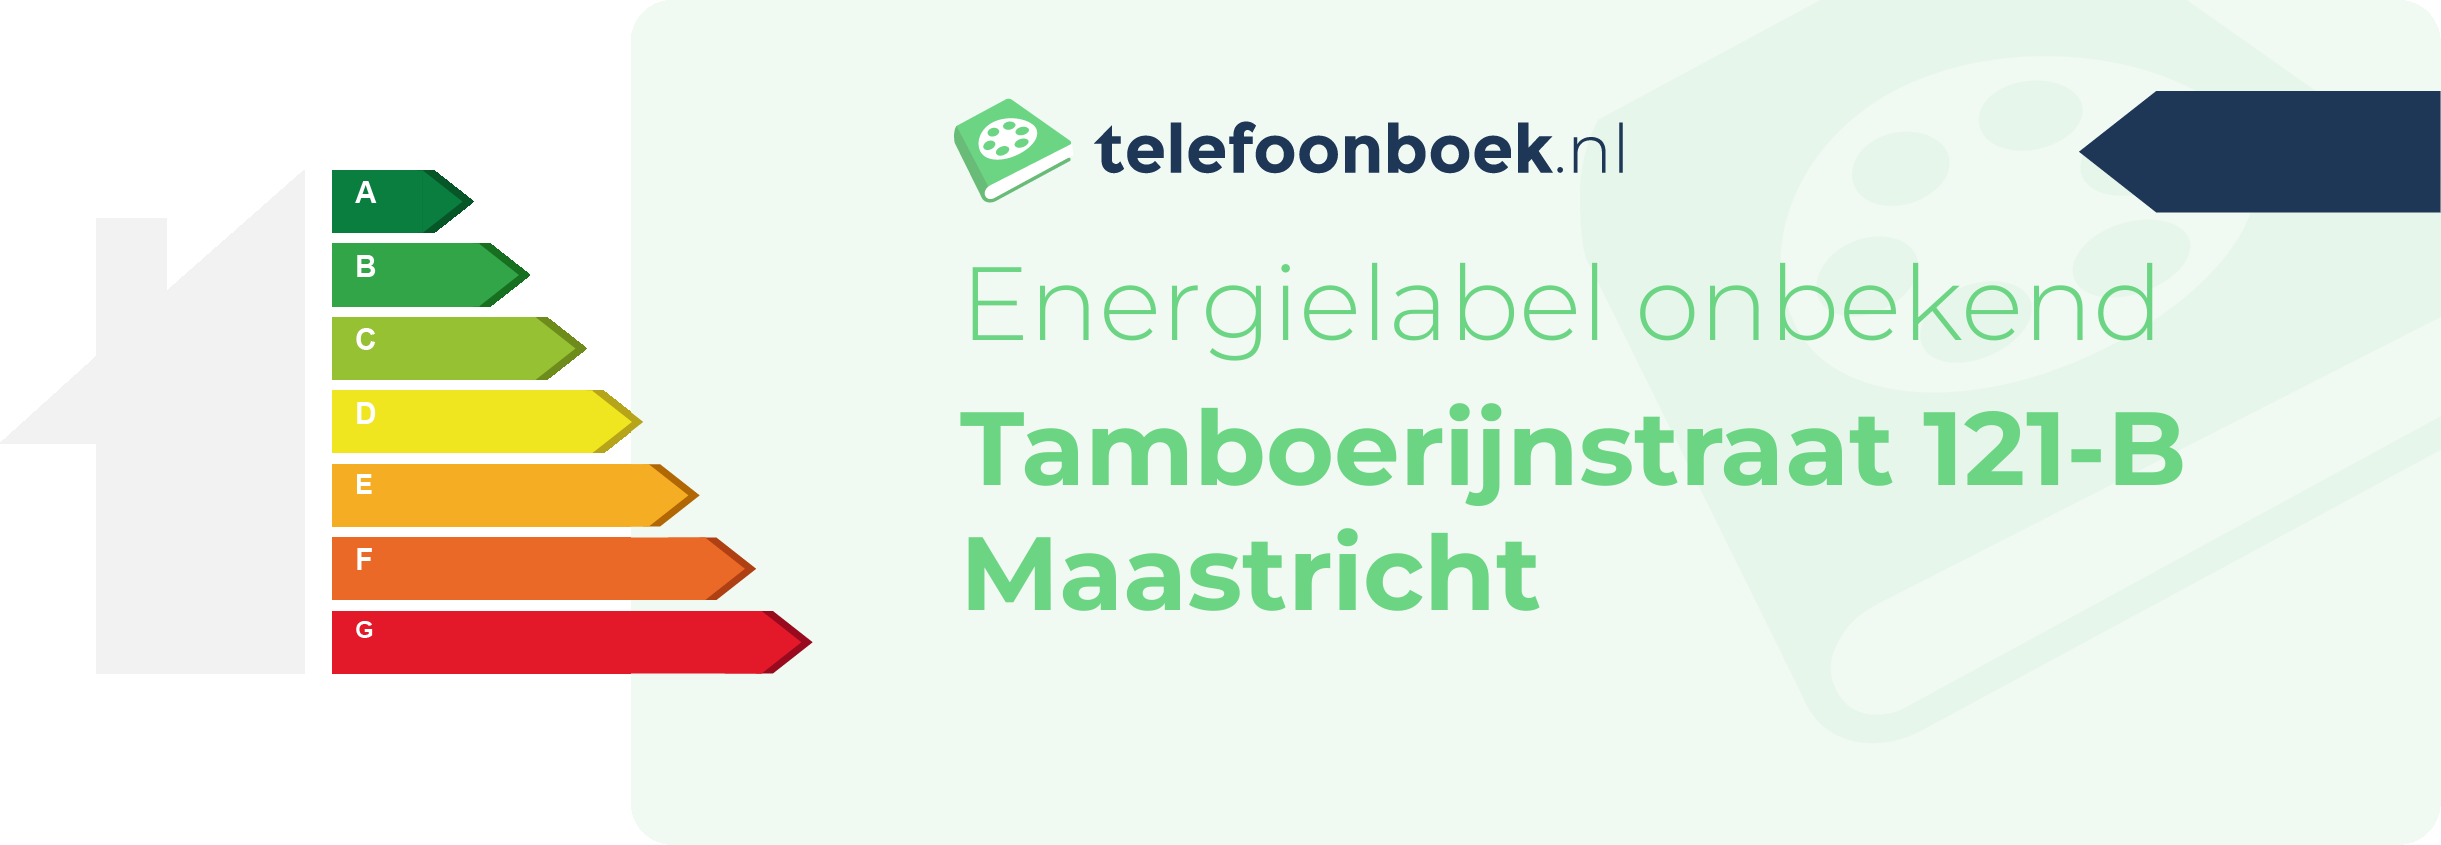 Energielabel Tamboerijnstraat 121-B Maastricht